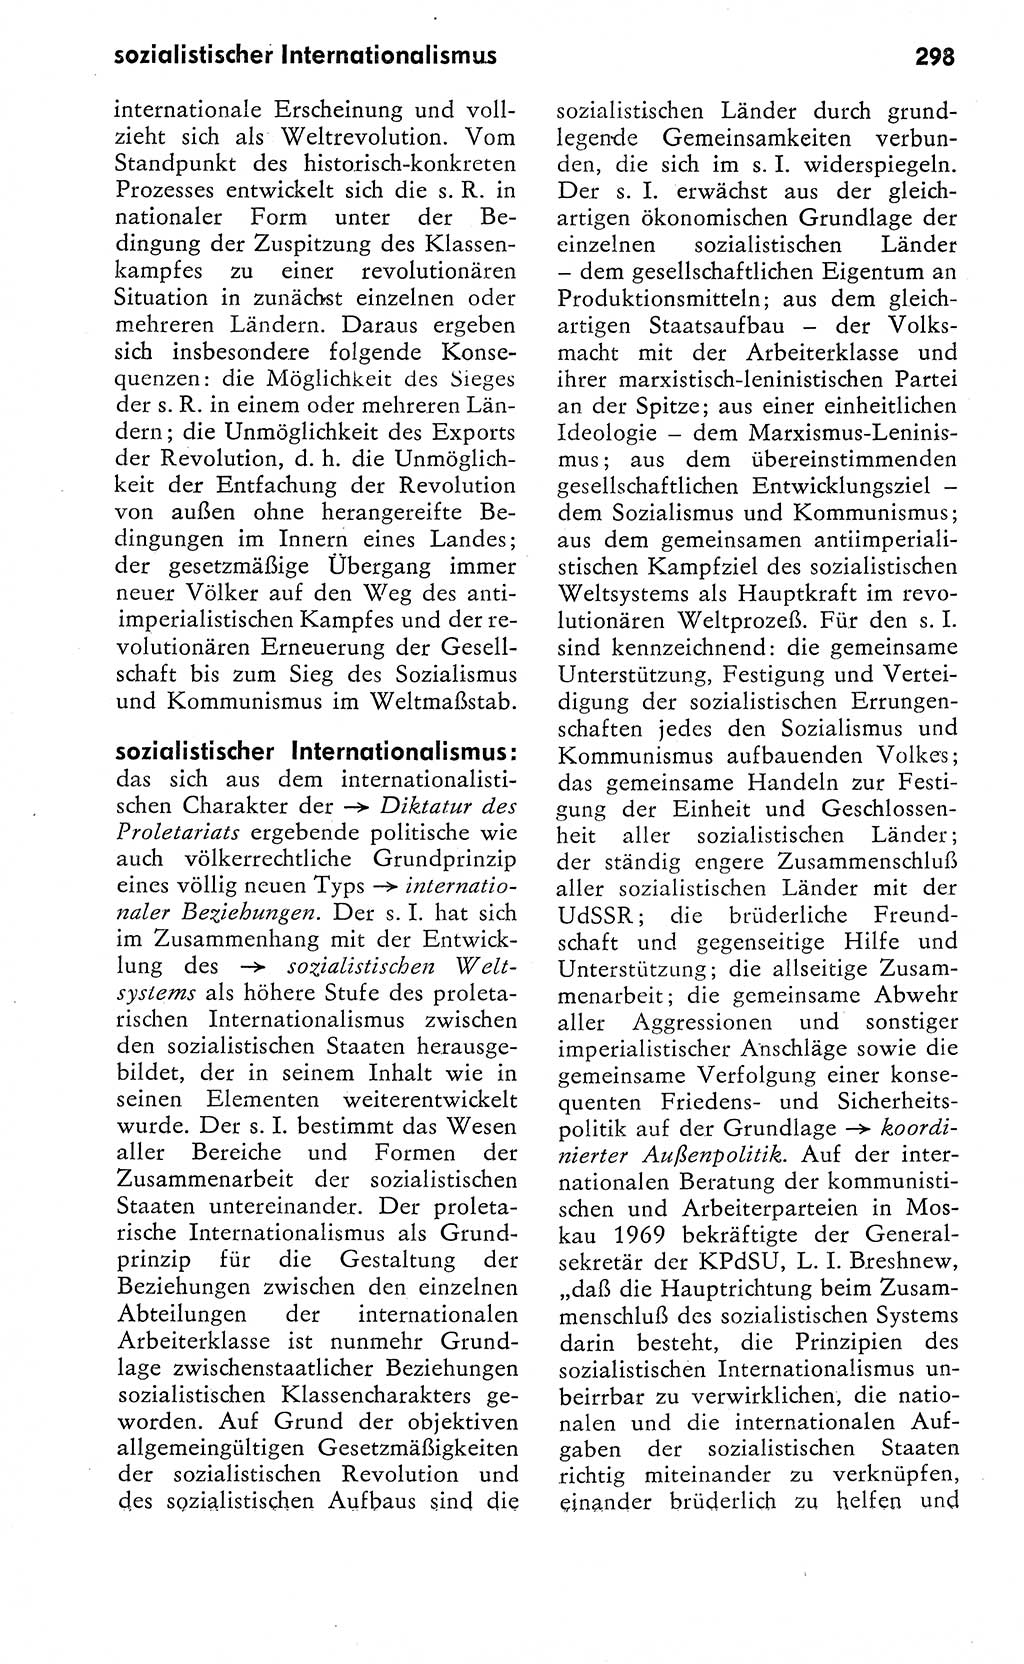 Wörterbuch zum sozialistischen Staat [Deutsche Demokratische Republik (DDR)] 1974, Seite 298 (Wb. soz. St. DDR 1974, S. 298)